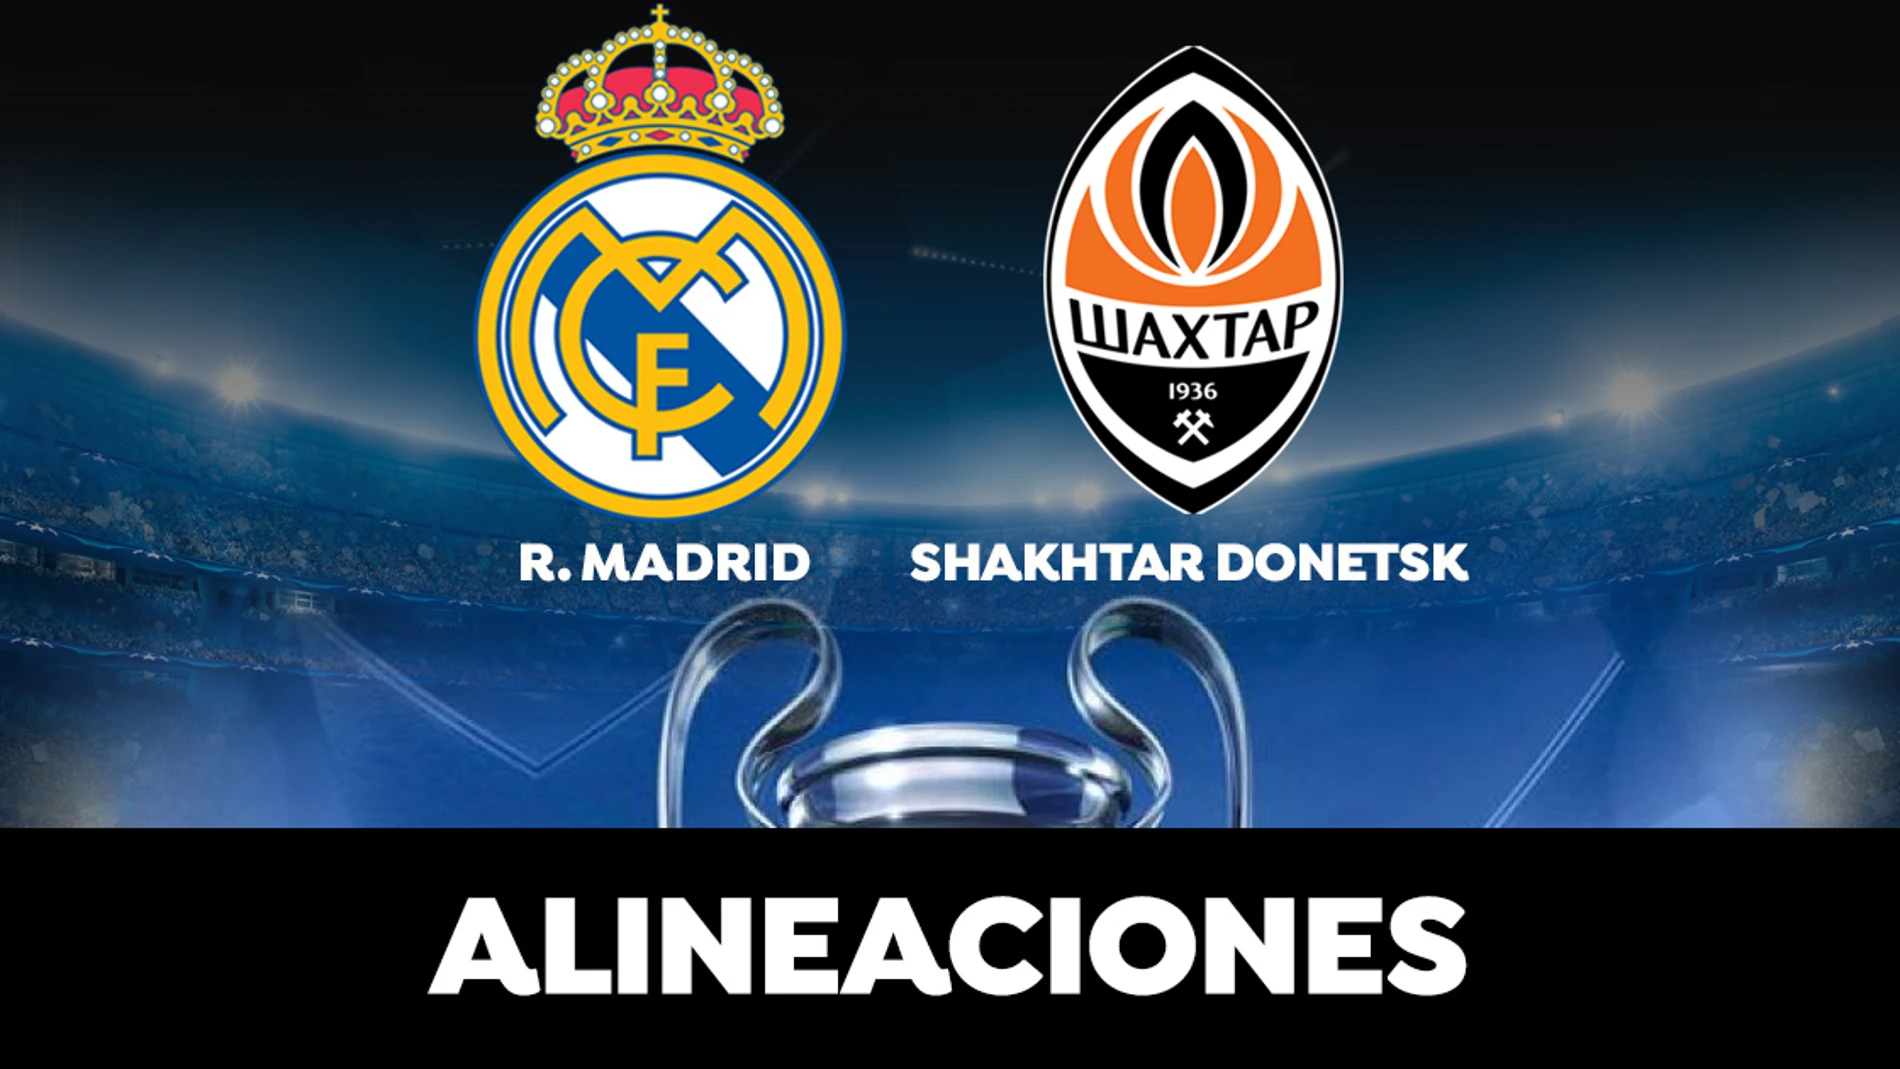 Alineación del Real Madrid en el partido de hoy ante el Shakhtar Donetsk en la Champions League